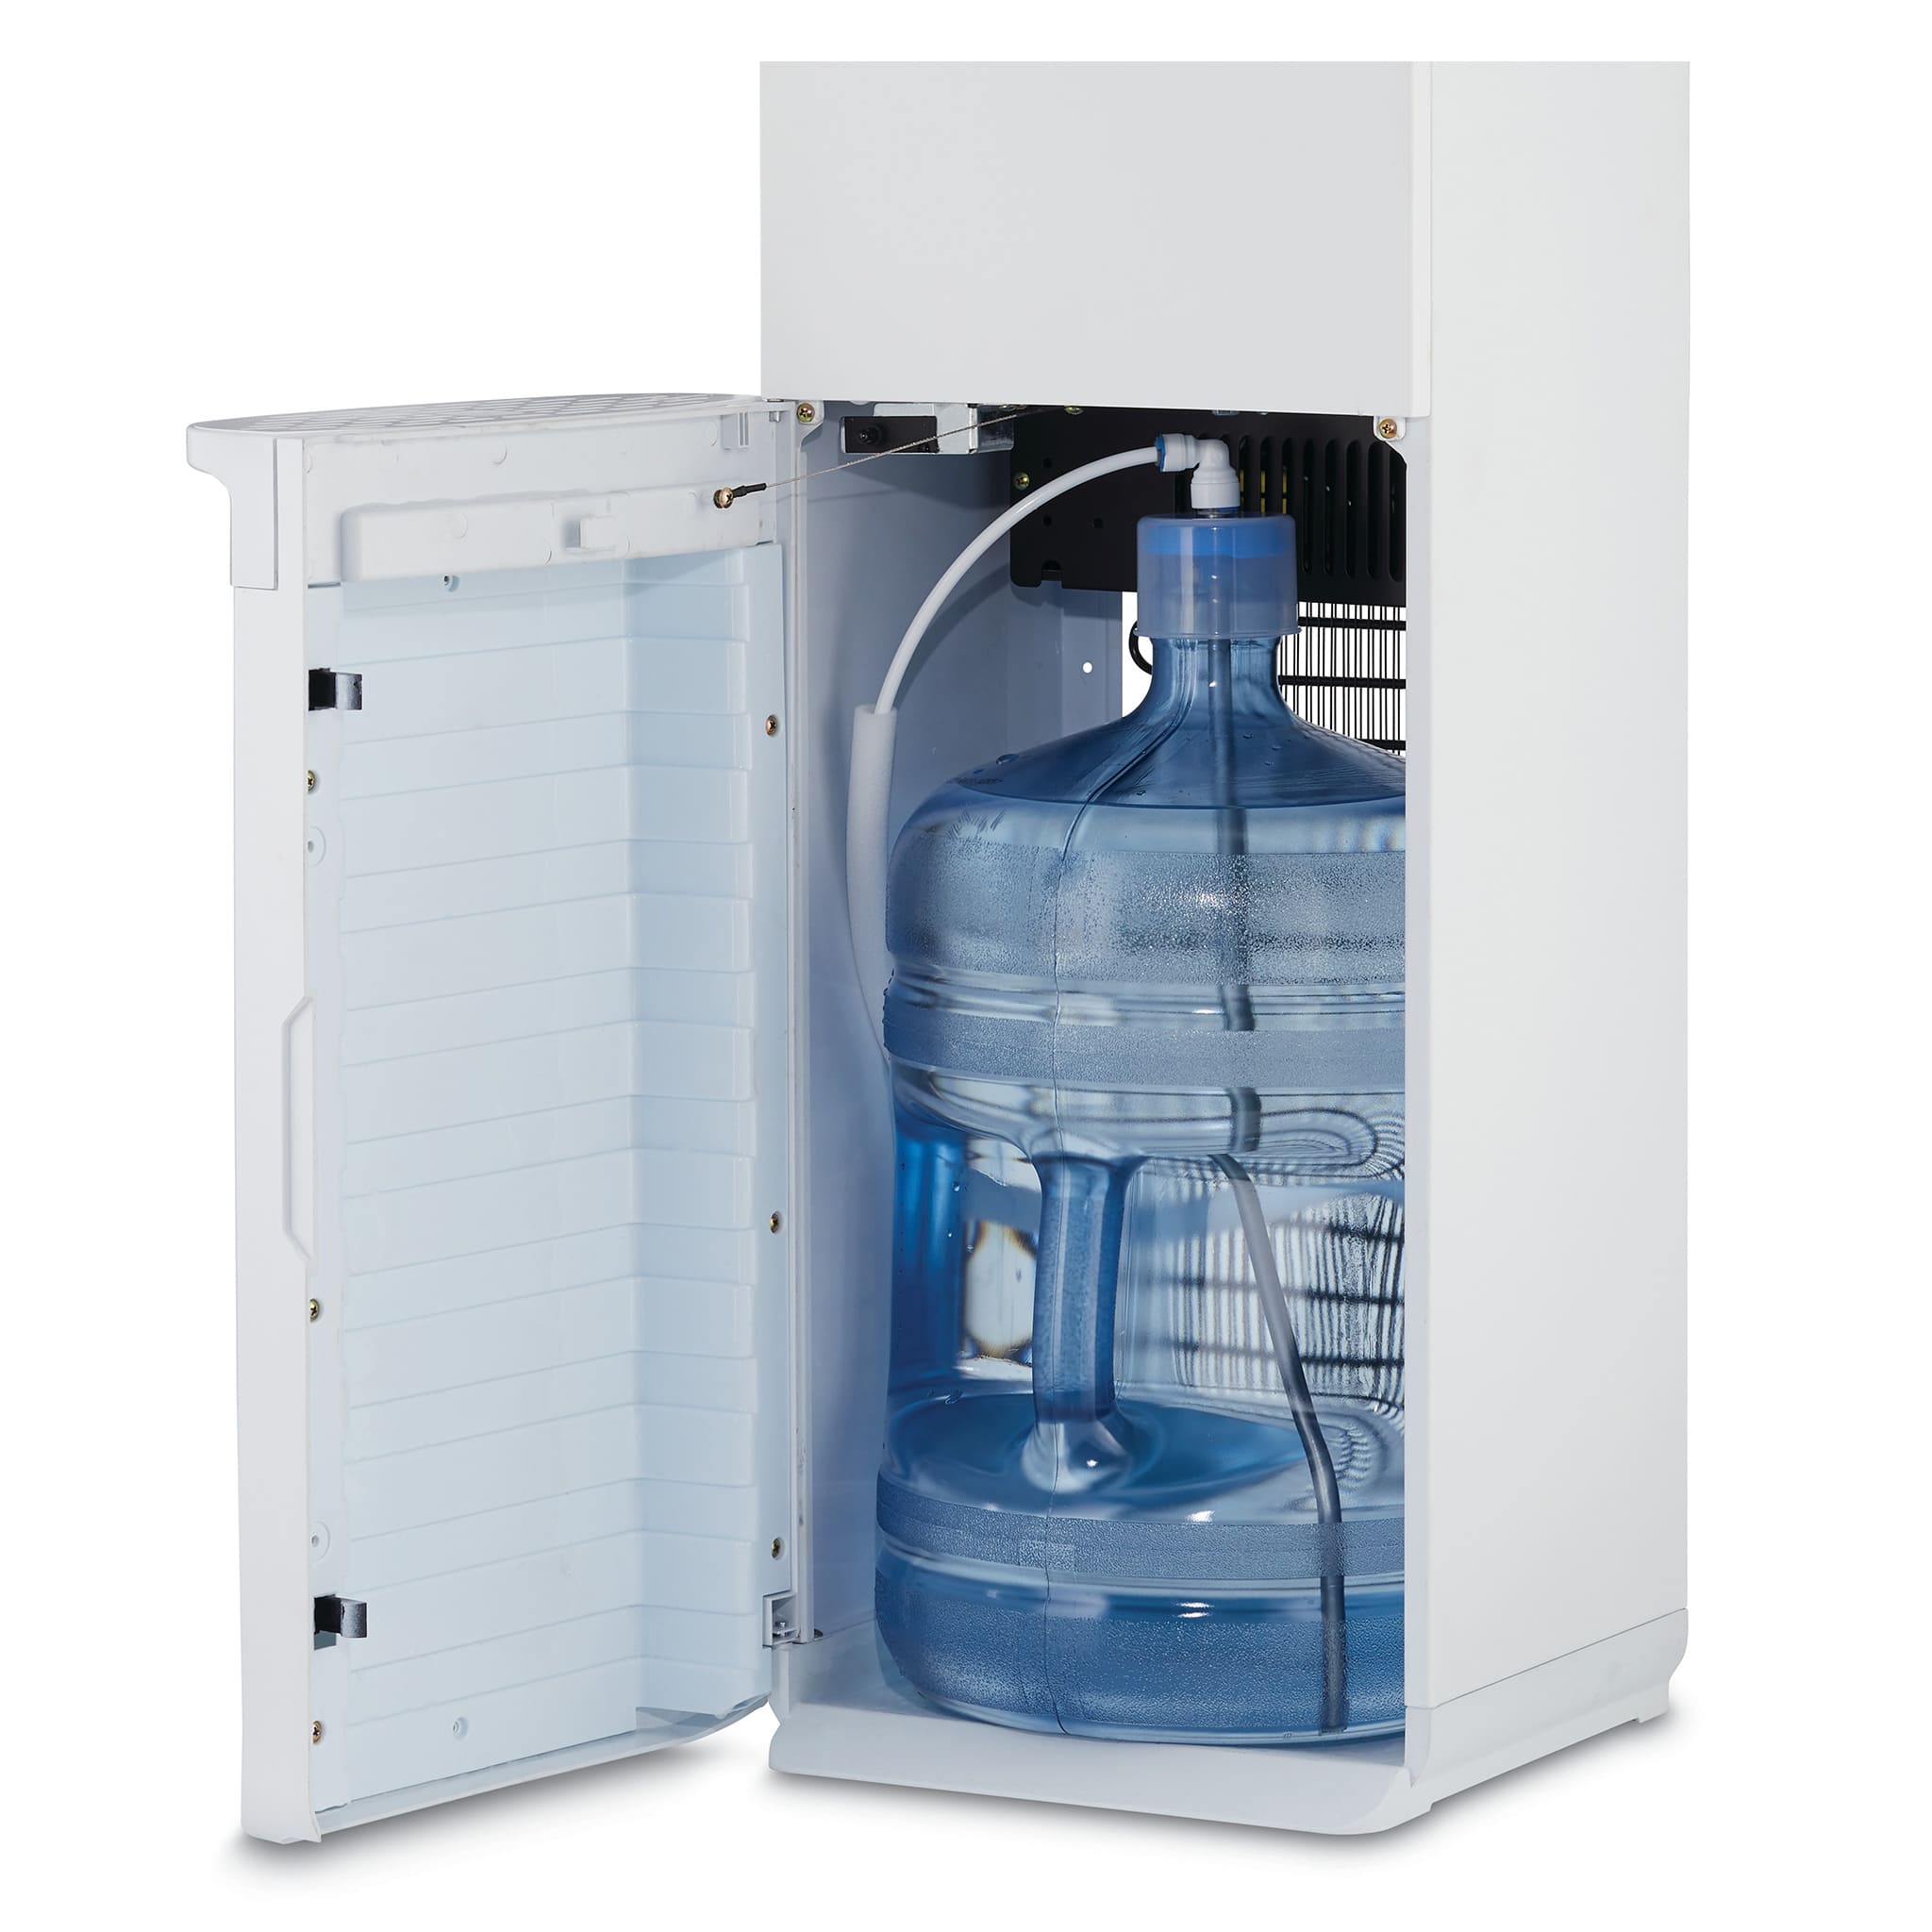 Refroidisseur d'eau professionnel à poser 2 sorties froides 80 l/h